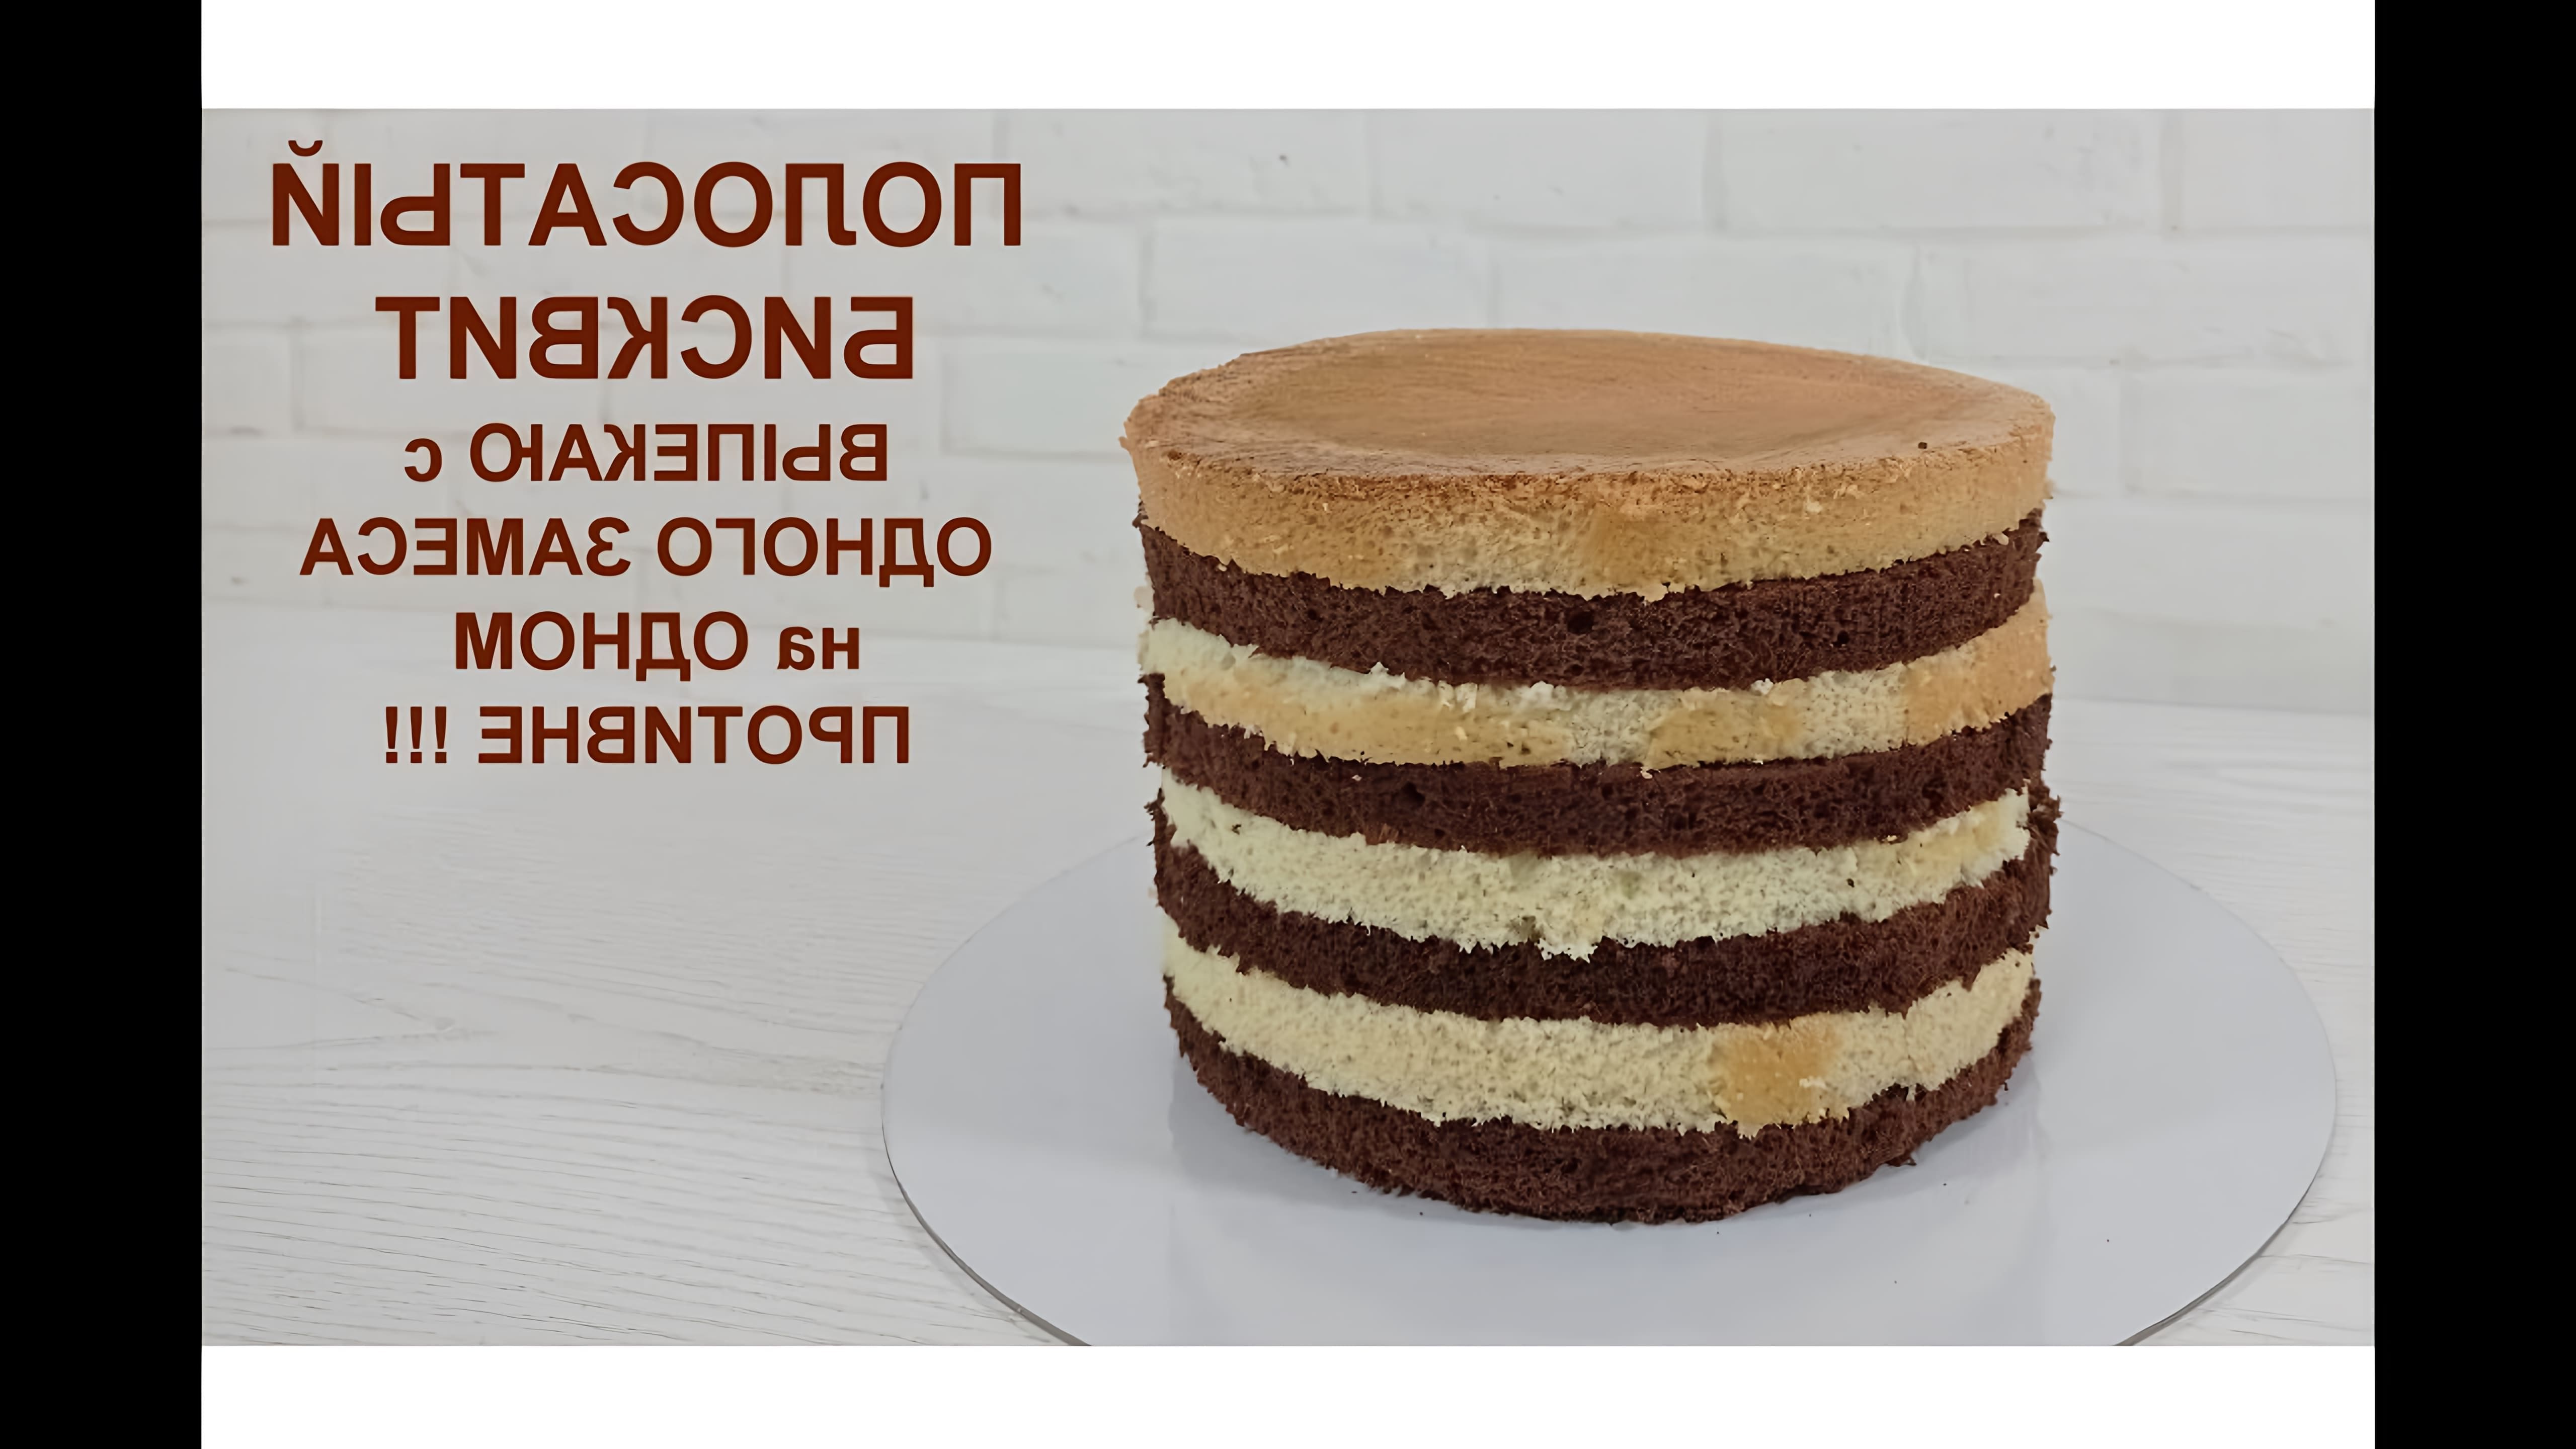 В данном видео демонстрируется процесс приготовления полосатого бисквита из ванильного и шоколадного теста